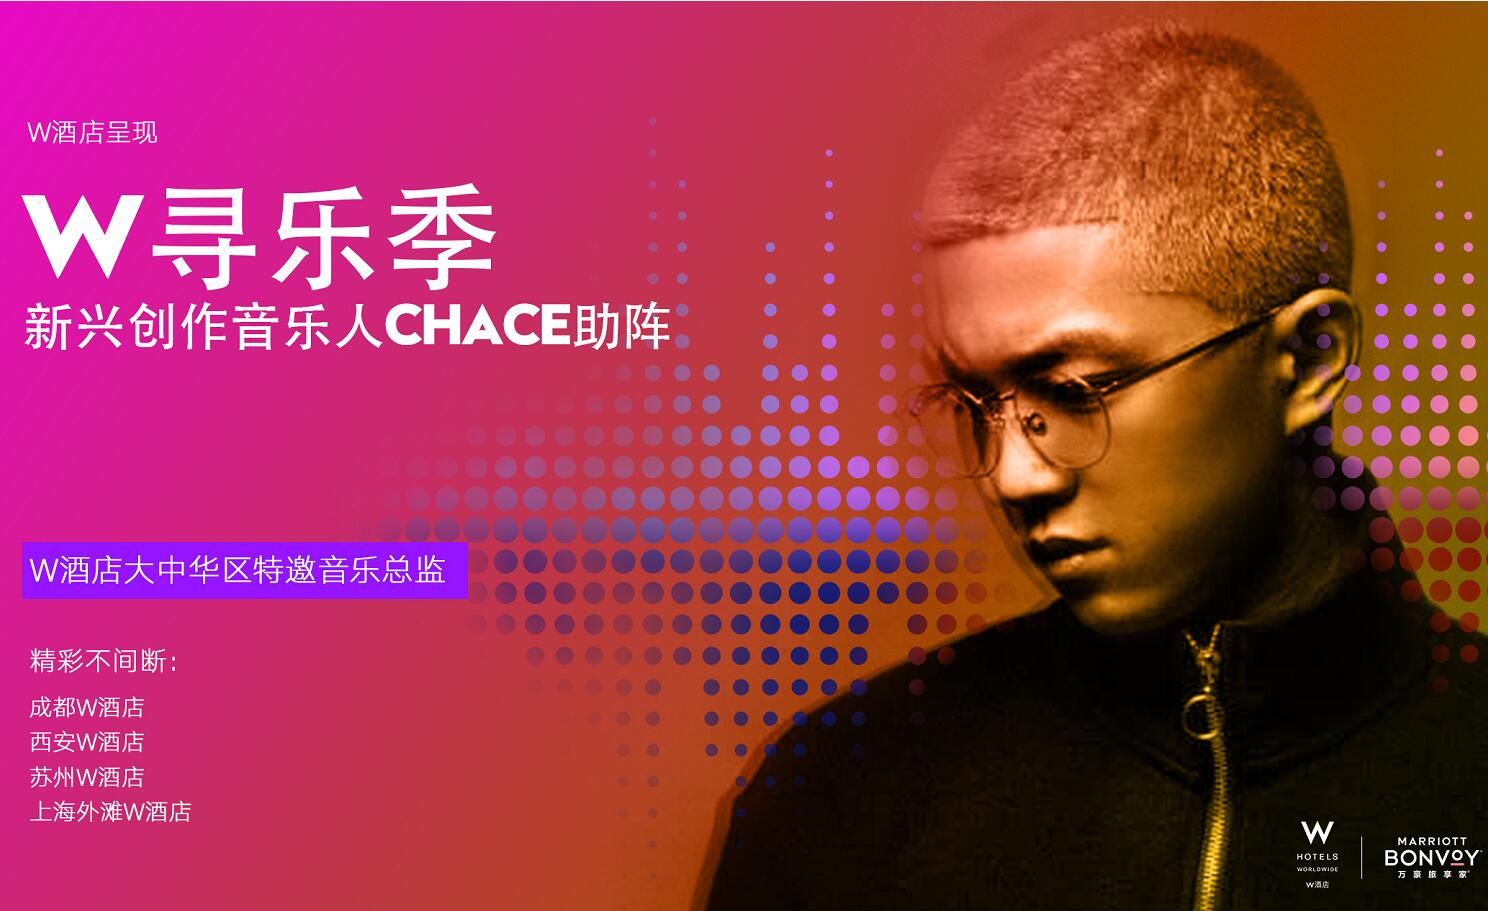 中国新兴音乐才子Chace成为W酒店在中国的首位特邀音乐总监